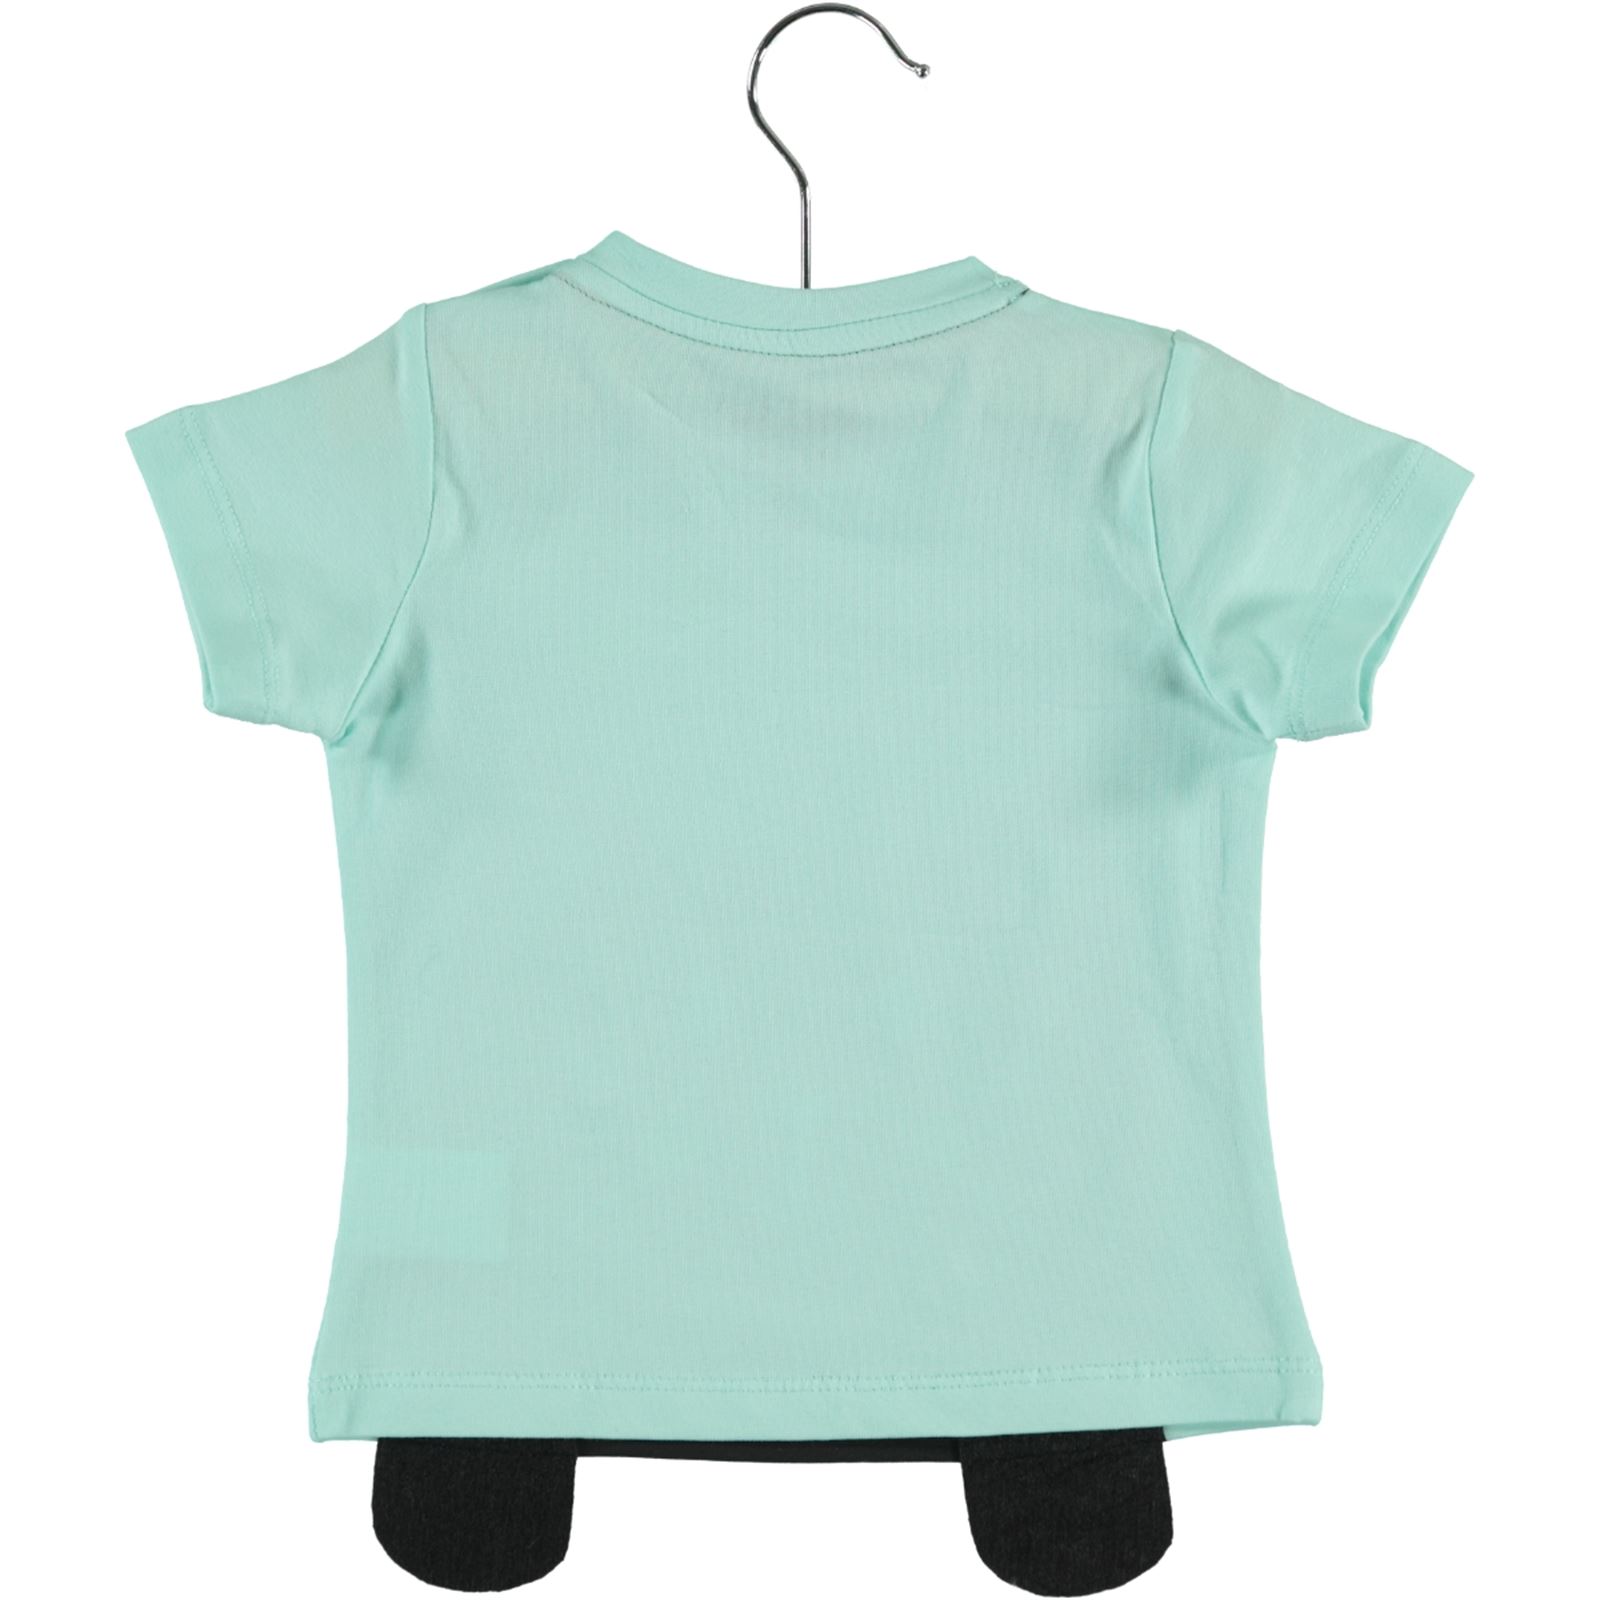 Kujju Kız Bebek Tişört 6-18 Ay Mint Yeşili